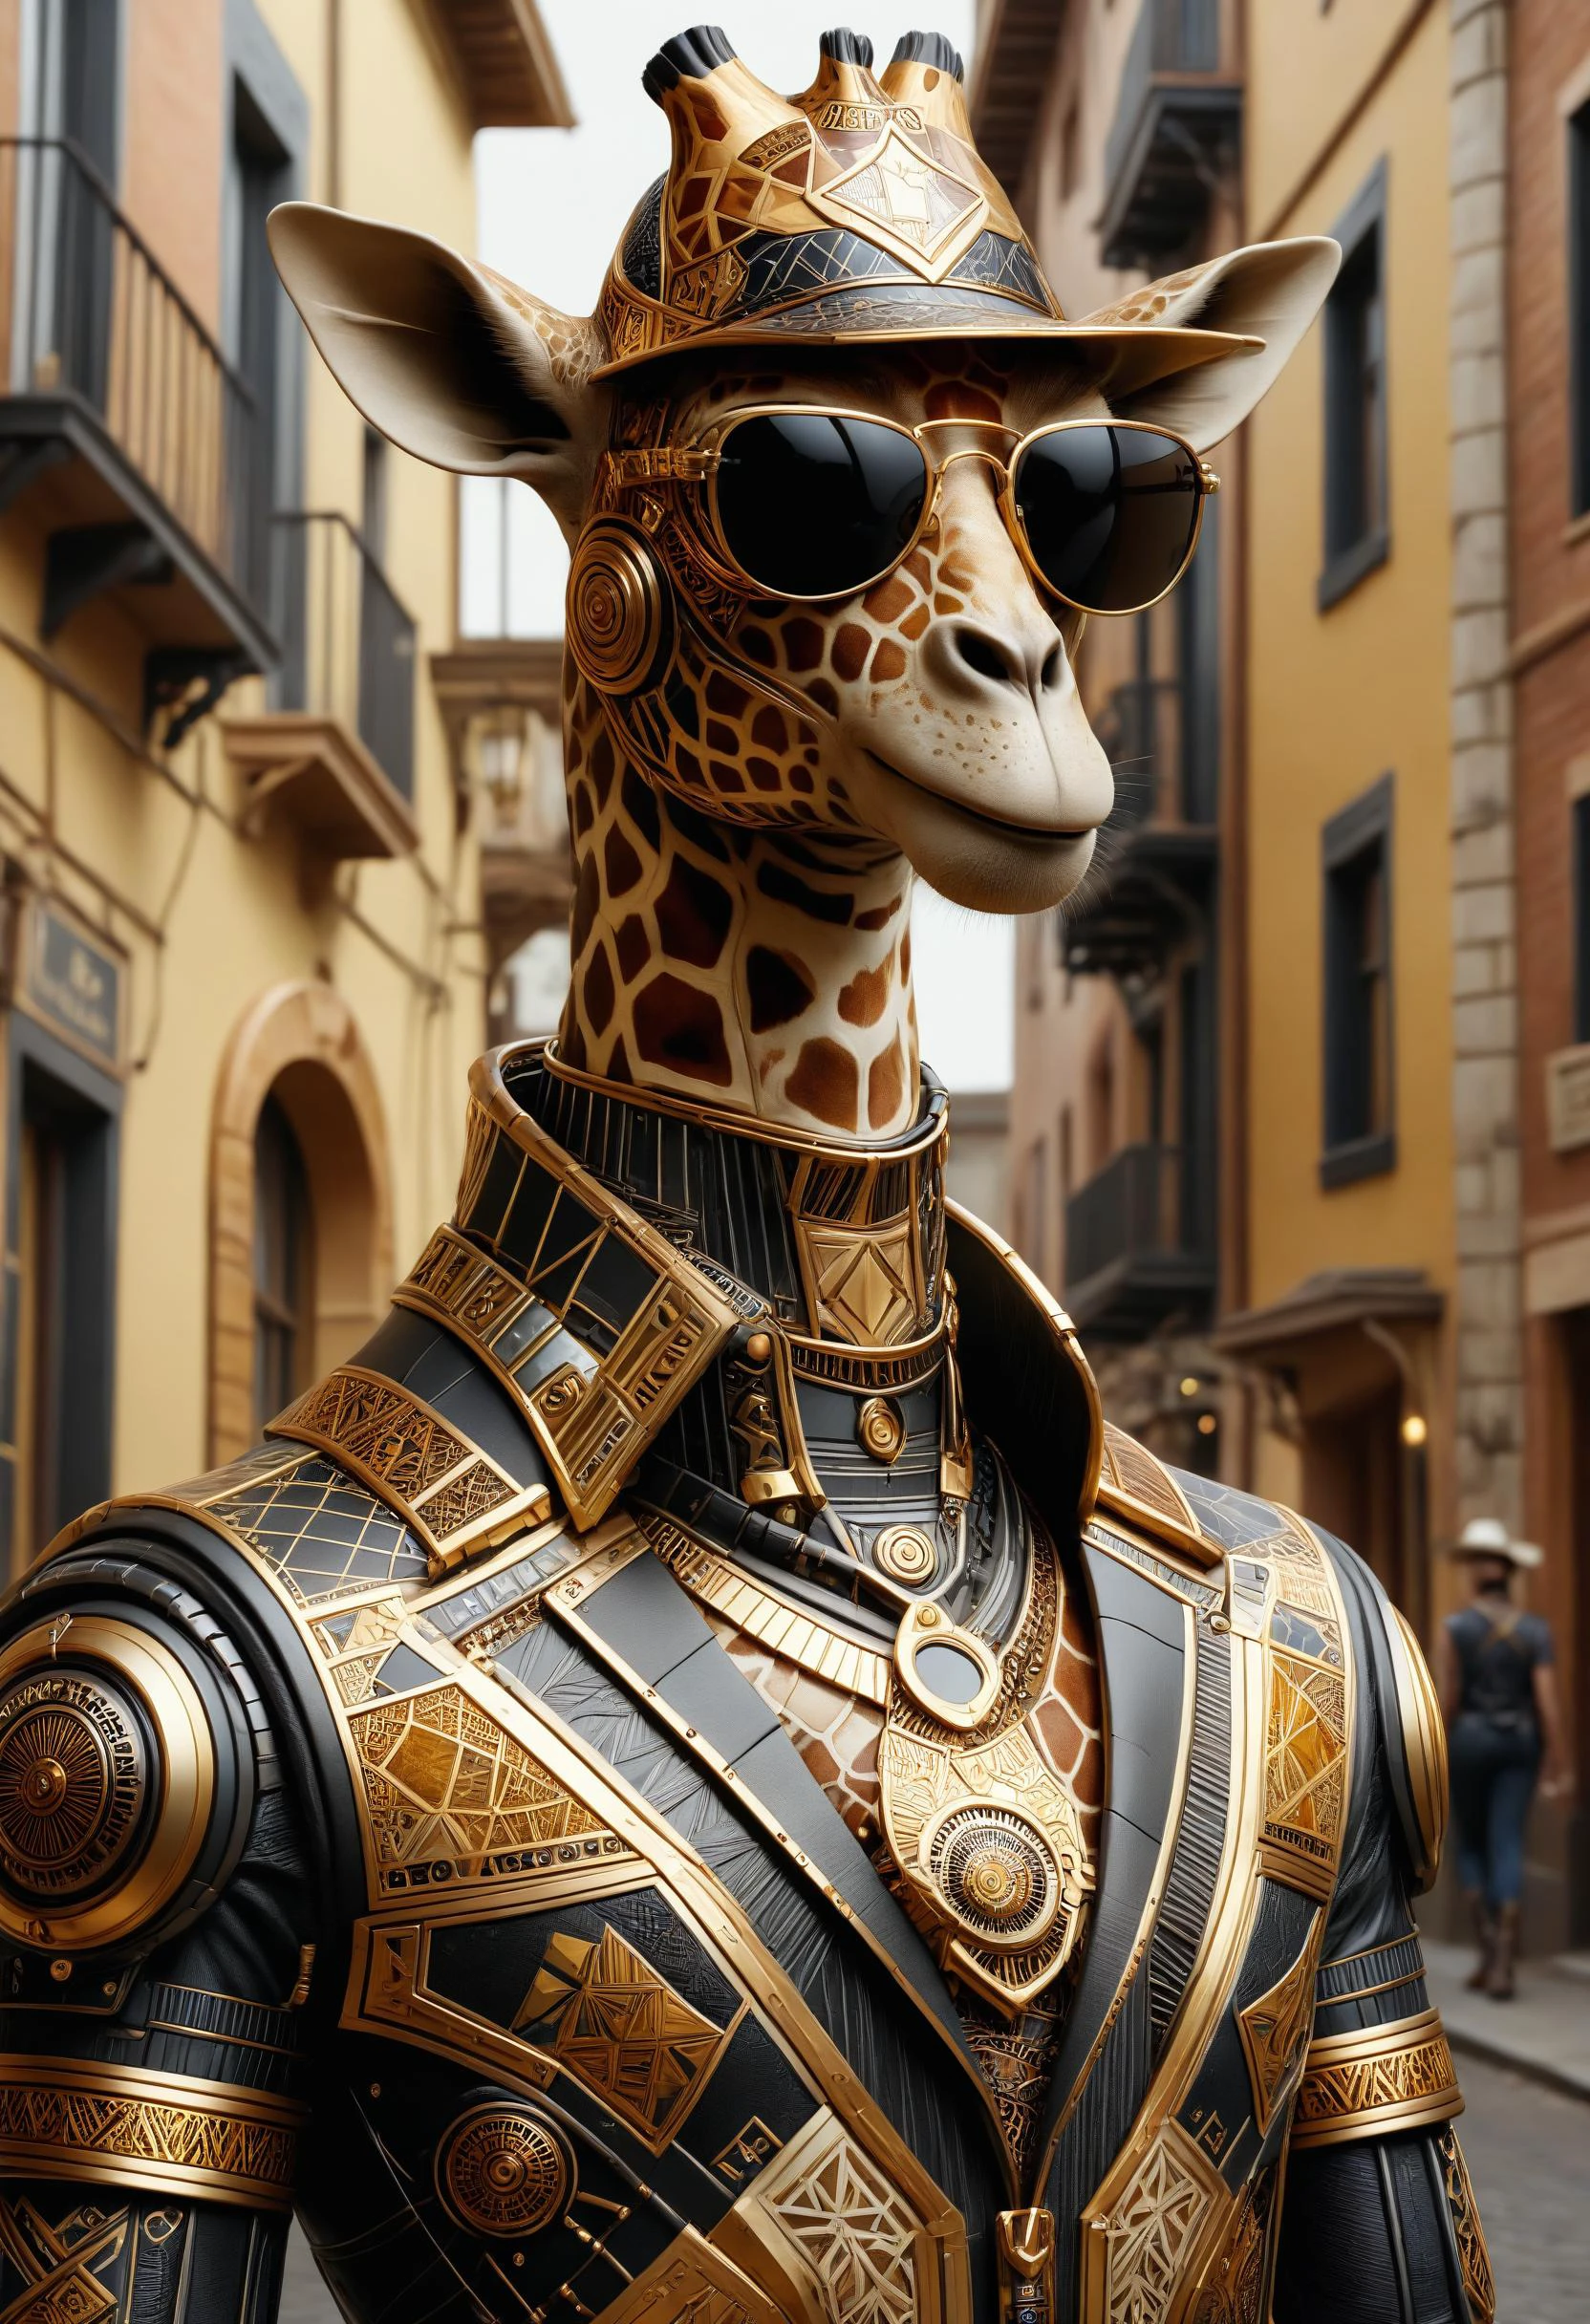 jirafa antro, usando un traje cibernético, sombrero de vaquero y gafas de sol en un casco antiguo dvr-frft